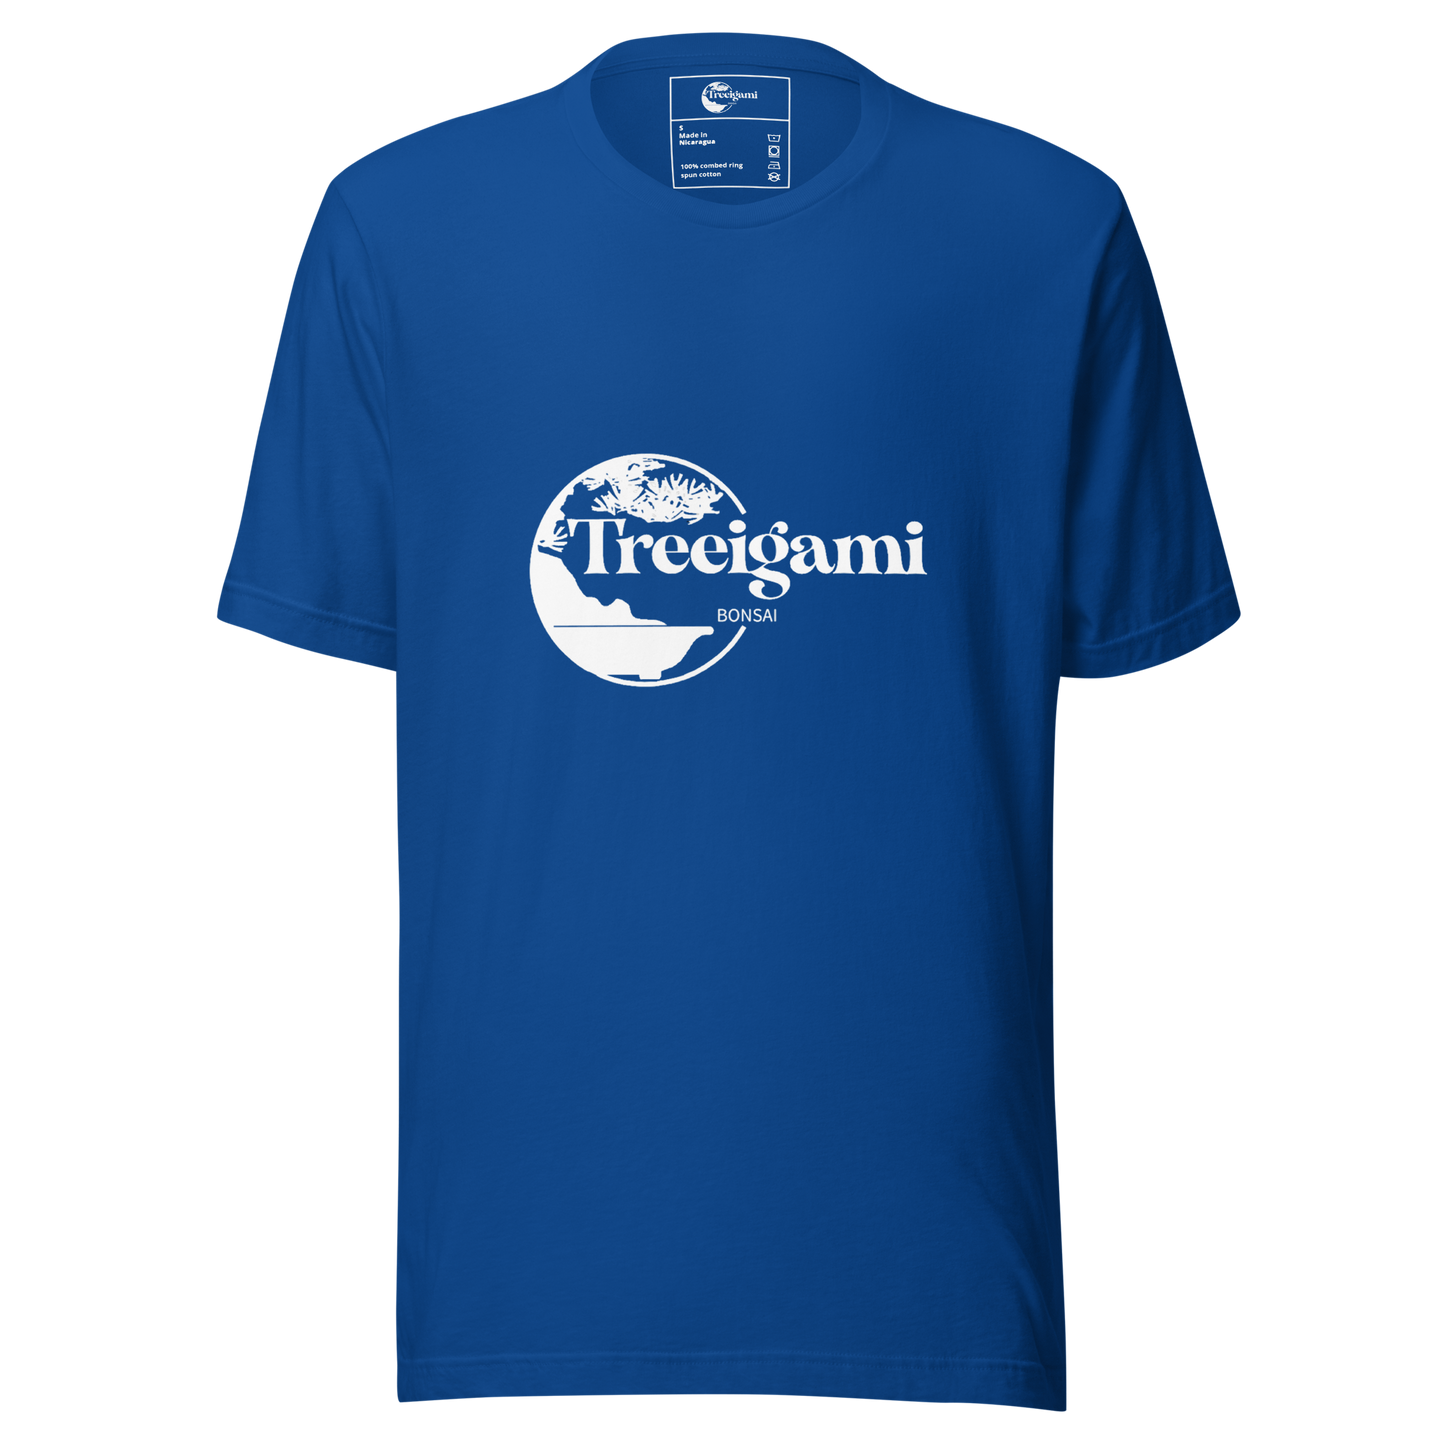 Unisex Treeigami t-shirt